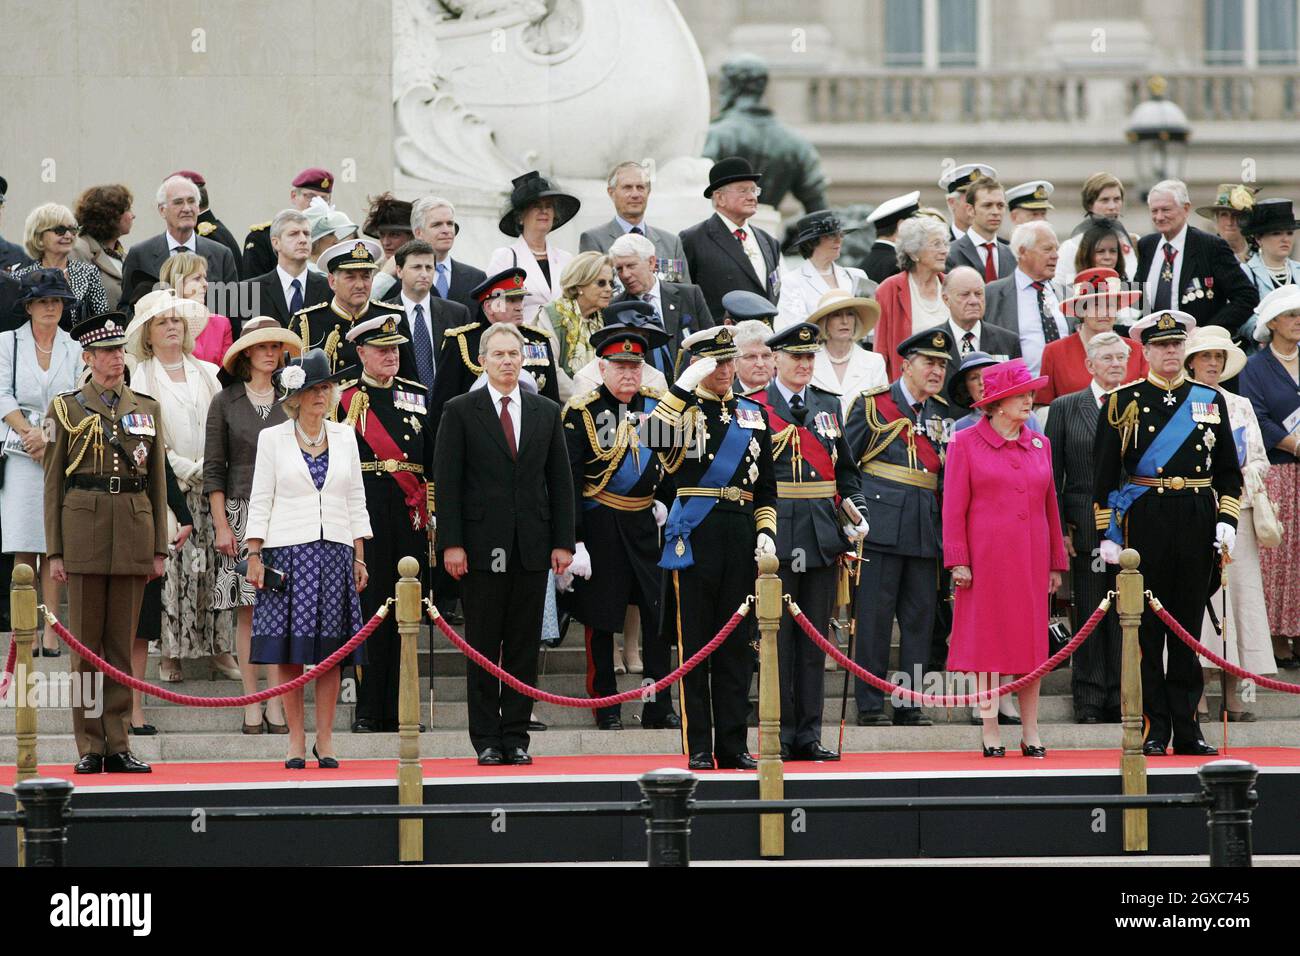 Le Prince Charles, prince de Galles accompagné de Camilla, duchesse de Cornwall, la baronne Margaret Thatcher, le duc de Kent, le prince Andrew, duc de York et le premier ministre Tony Blair, saluent le Falklands Veterans Parade dans le Mall, Londres,Commémorer 25 ans depuis la fin de la guerre des Malouines. Banque D'Images